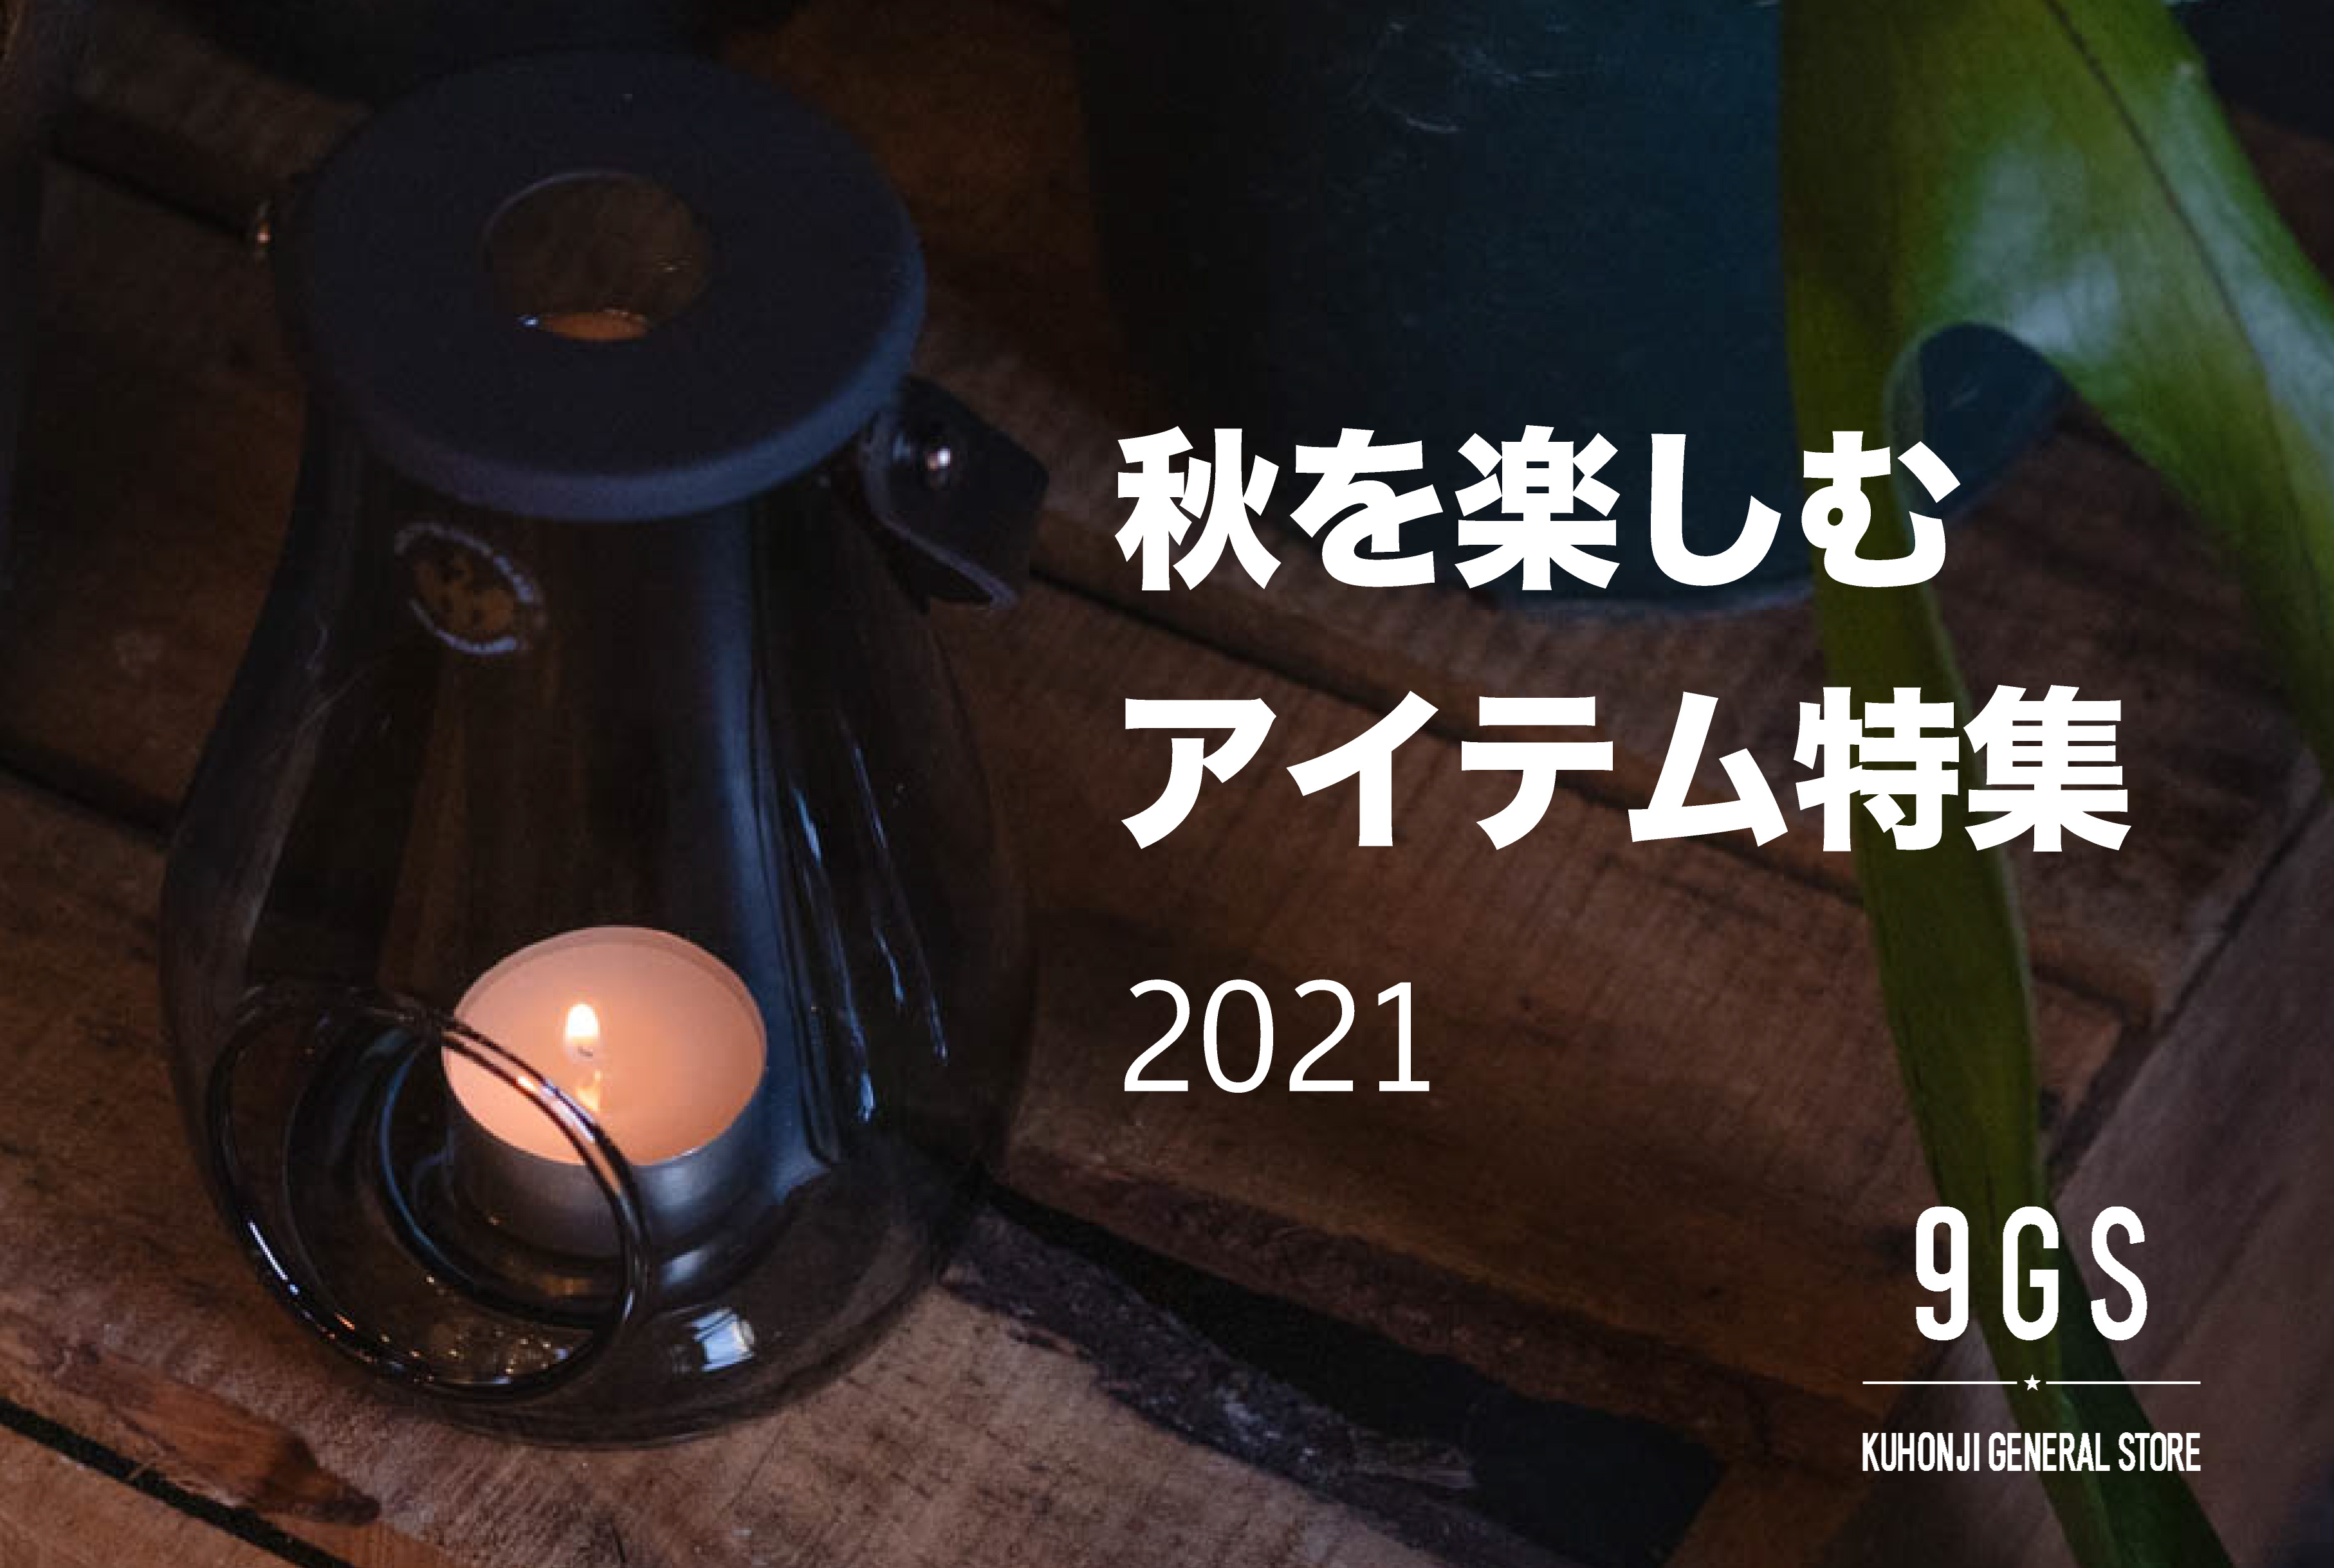 【特集】Recommended products for Autumn 2021